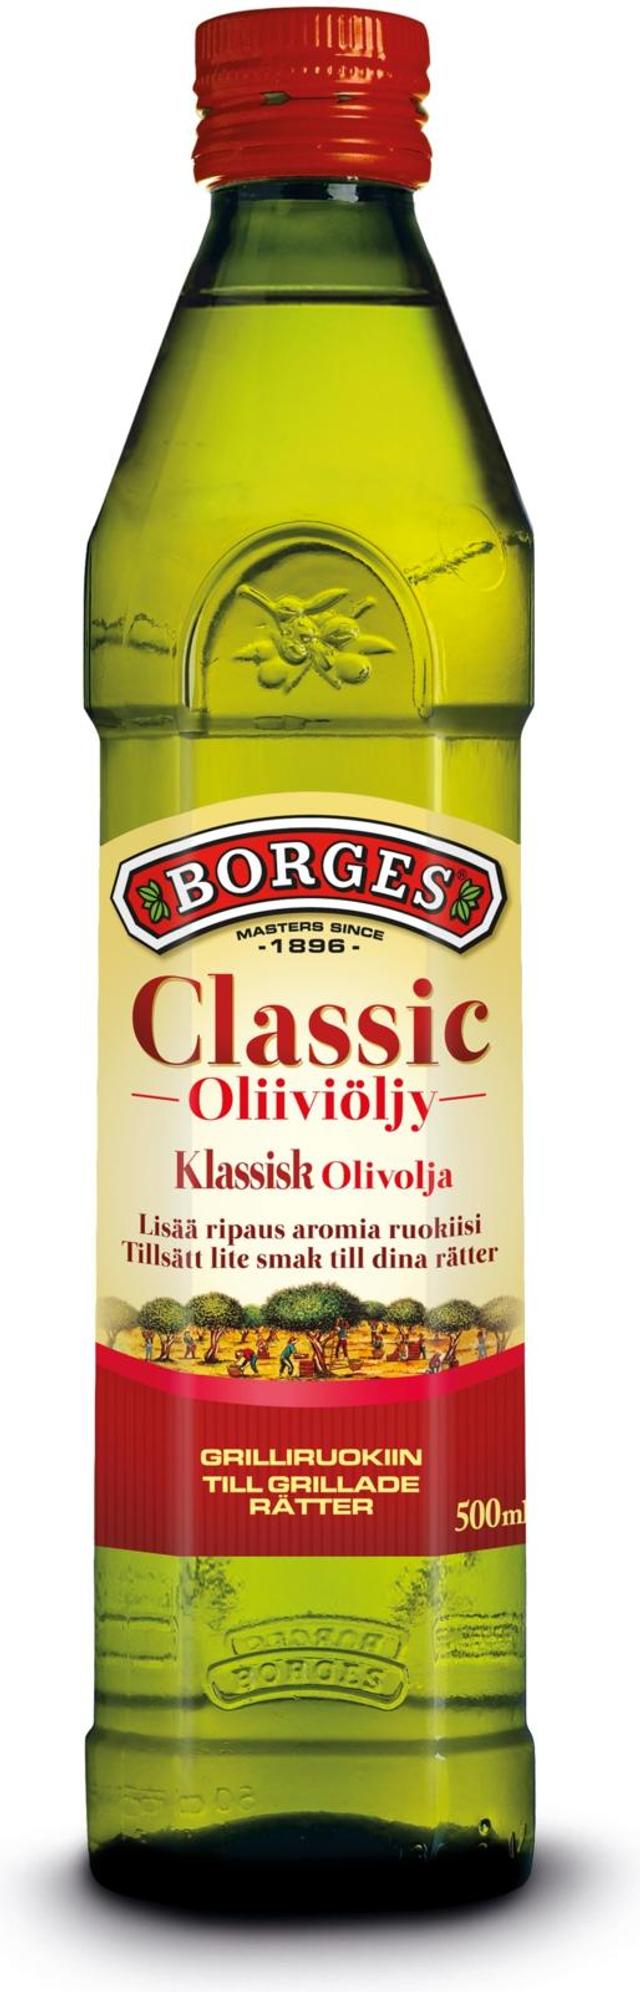 500ml Borges Classic oliiviöljy